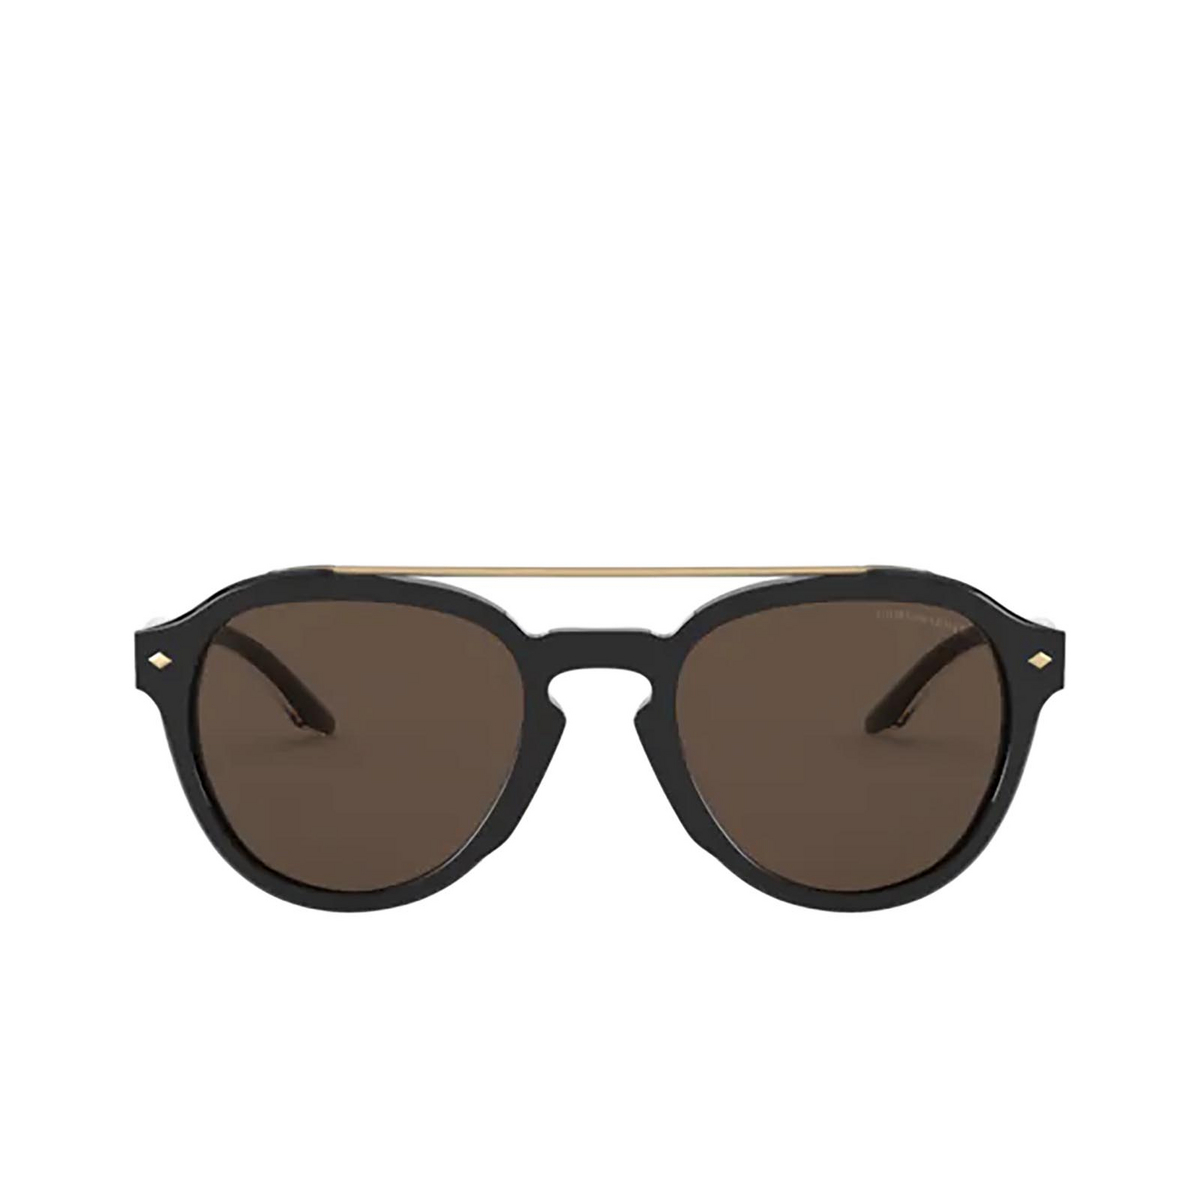 Giorgio Armani AR8129 Sunglasses 500173 Black - front view